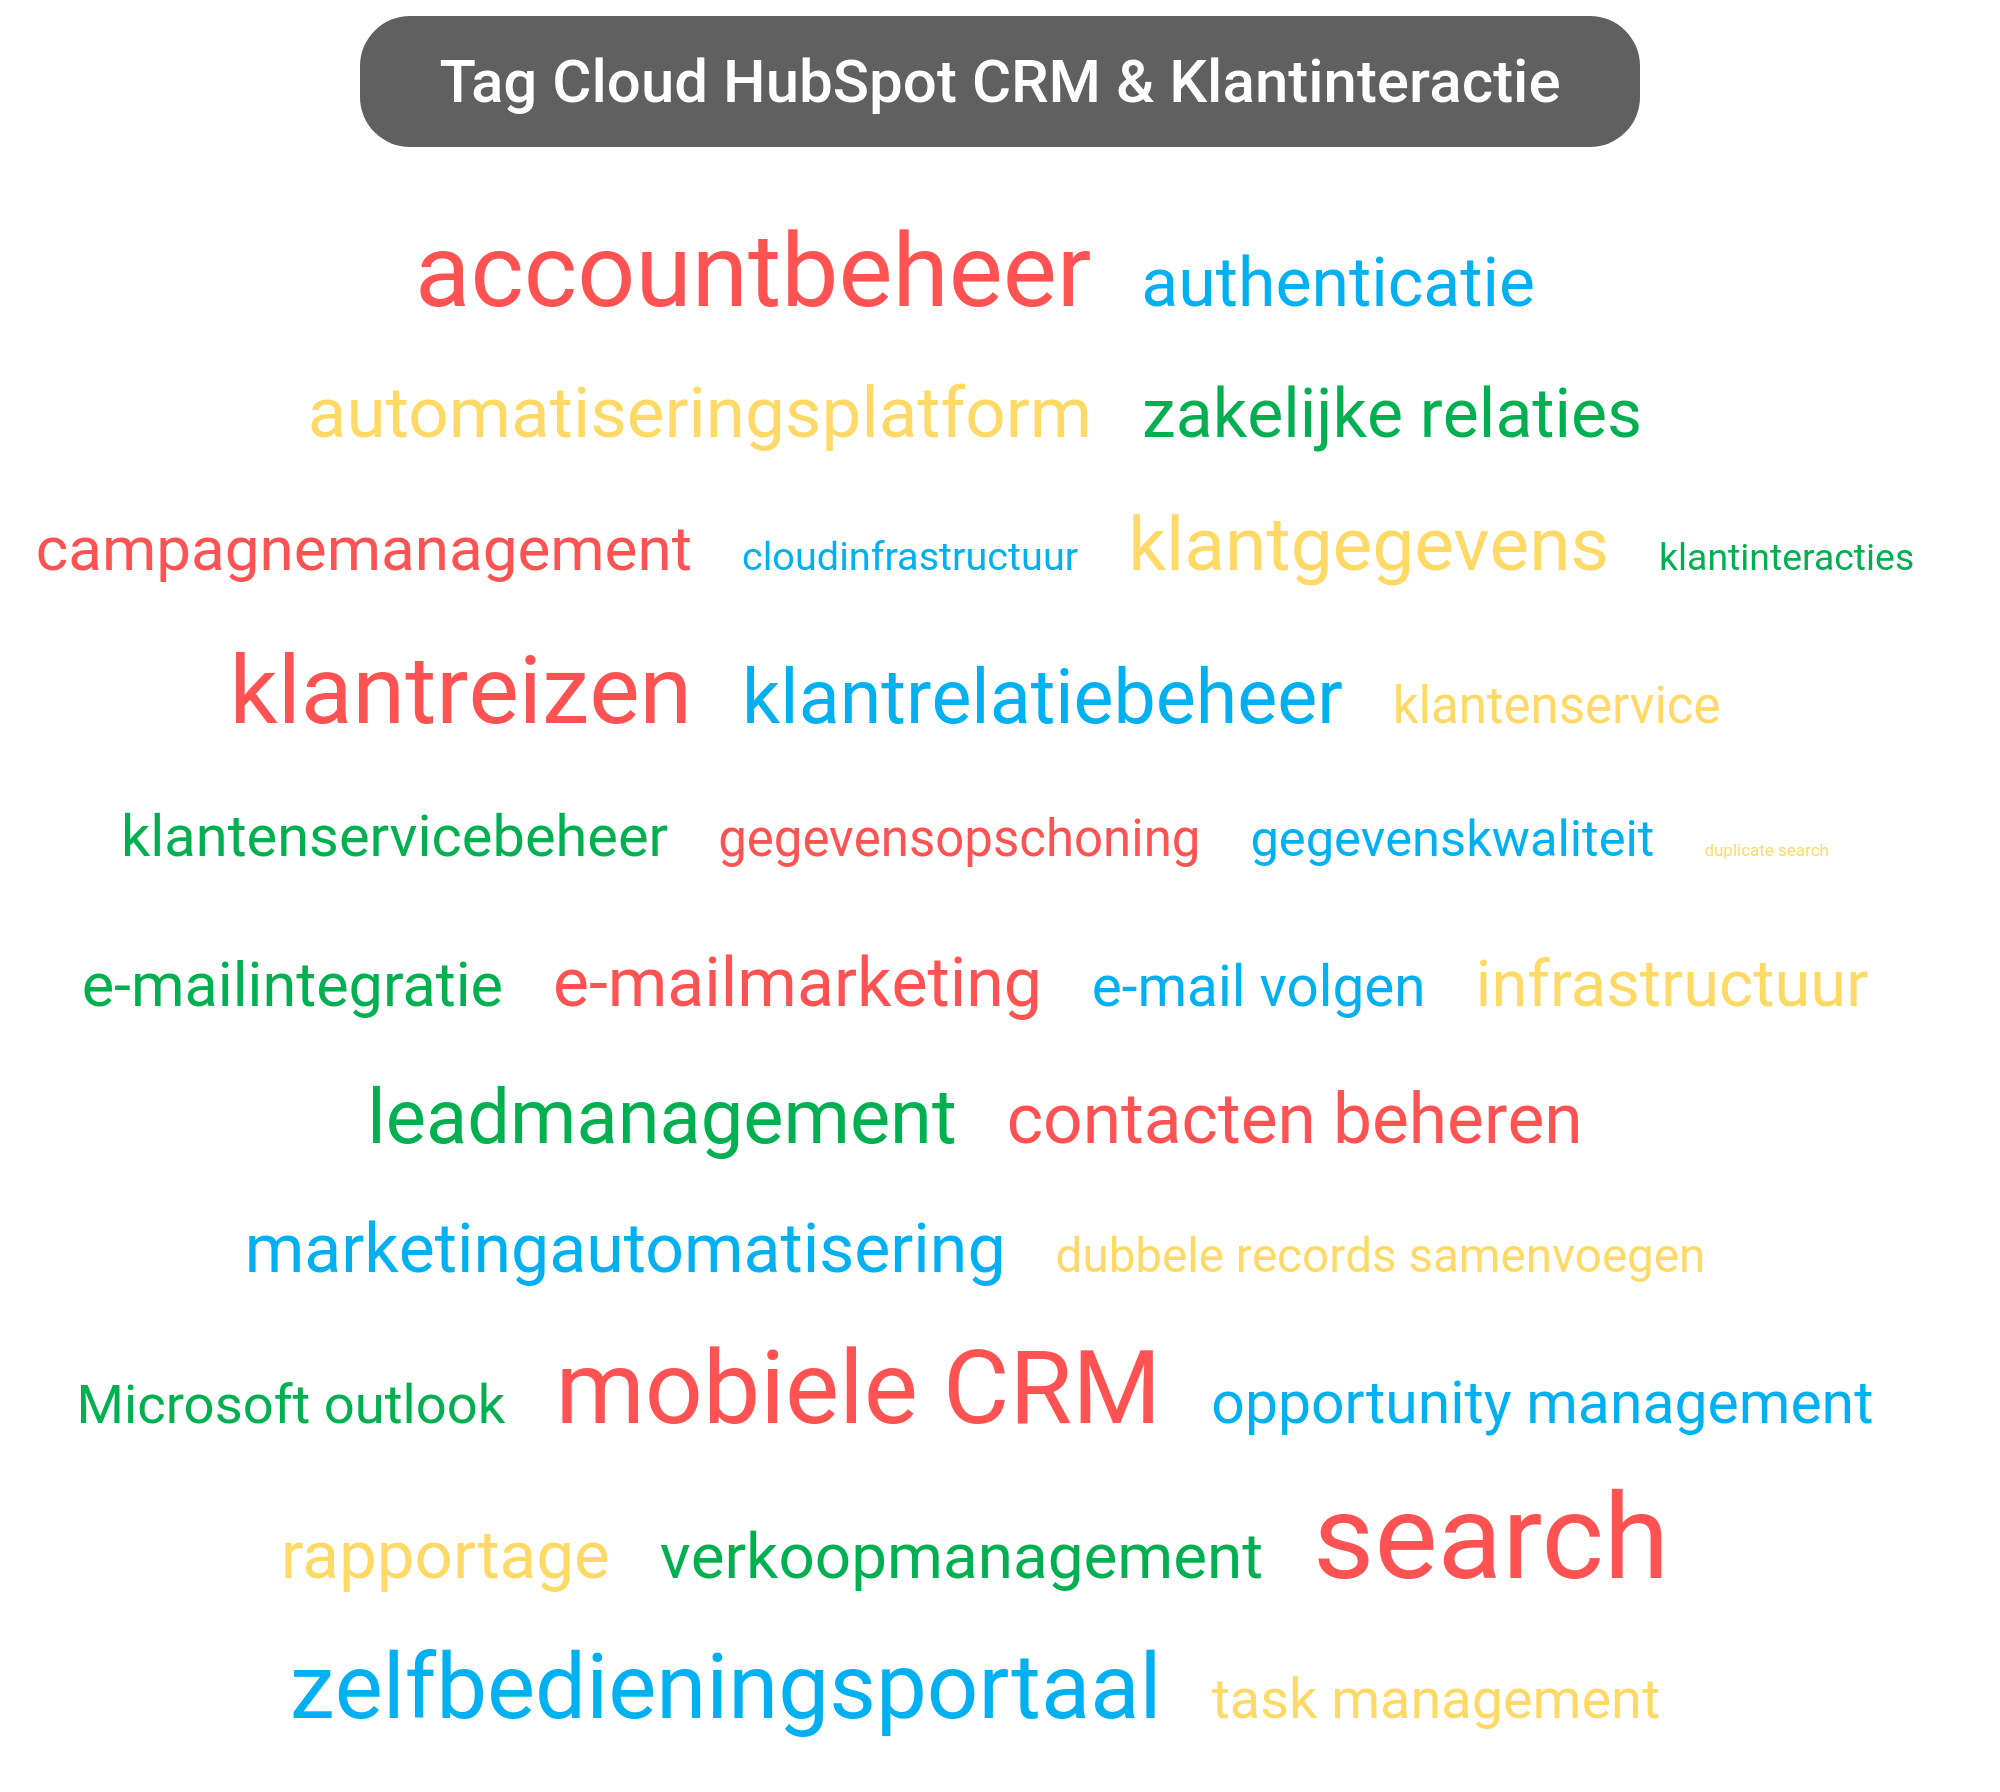 Tag cloud van HubSpot CRM tools.